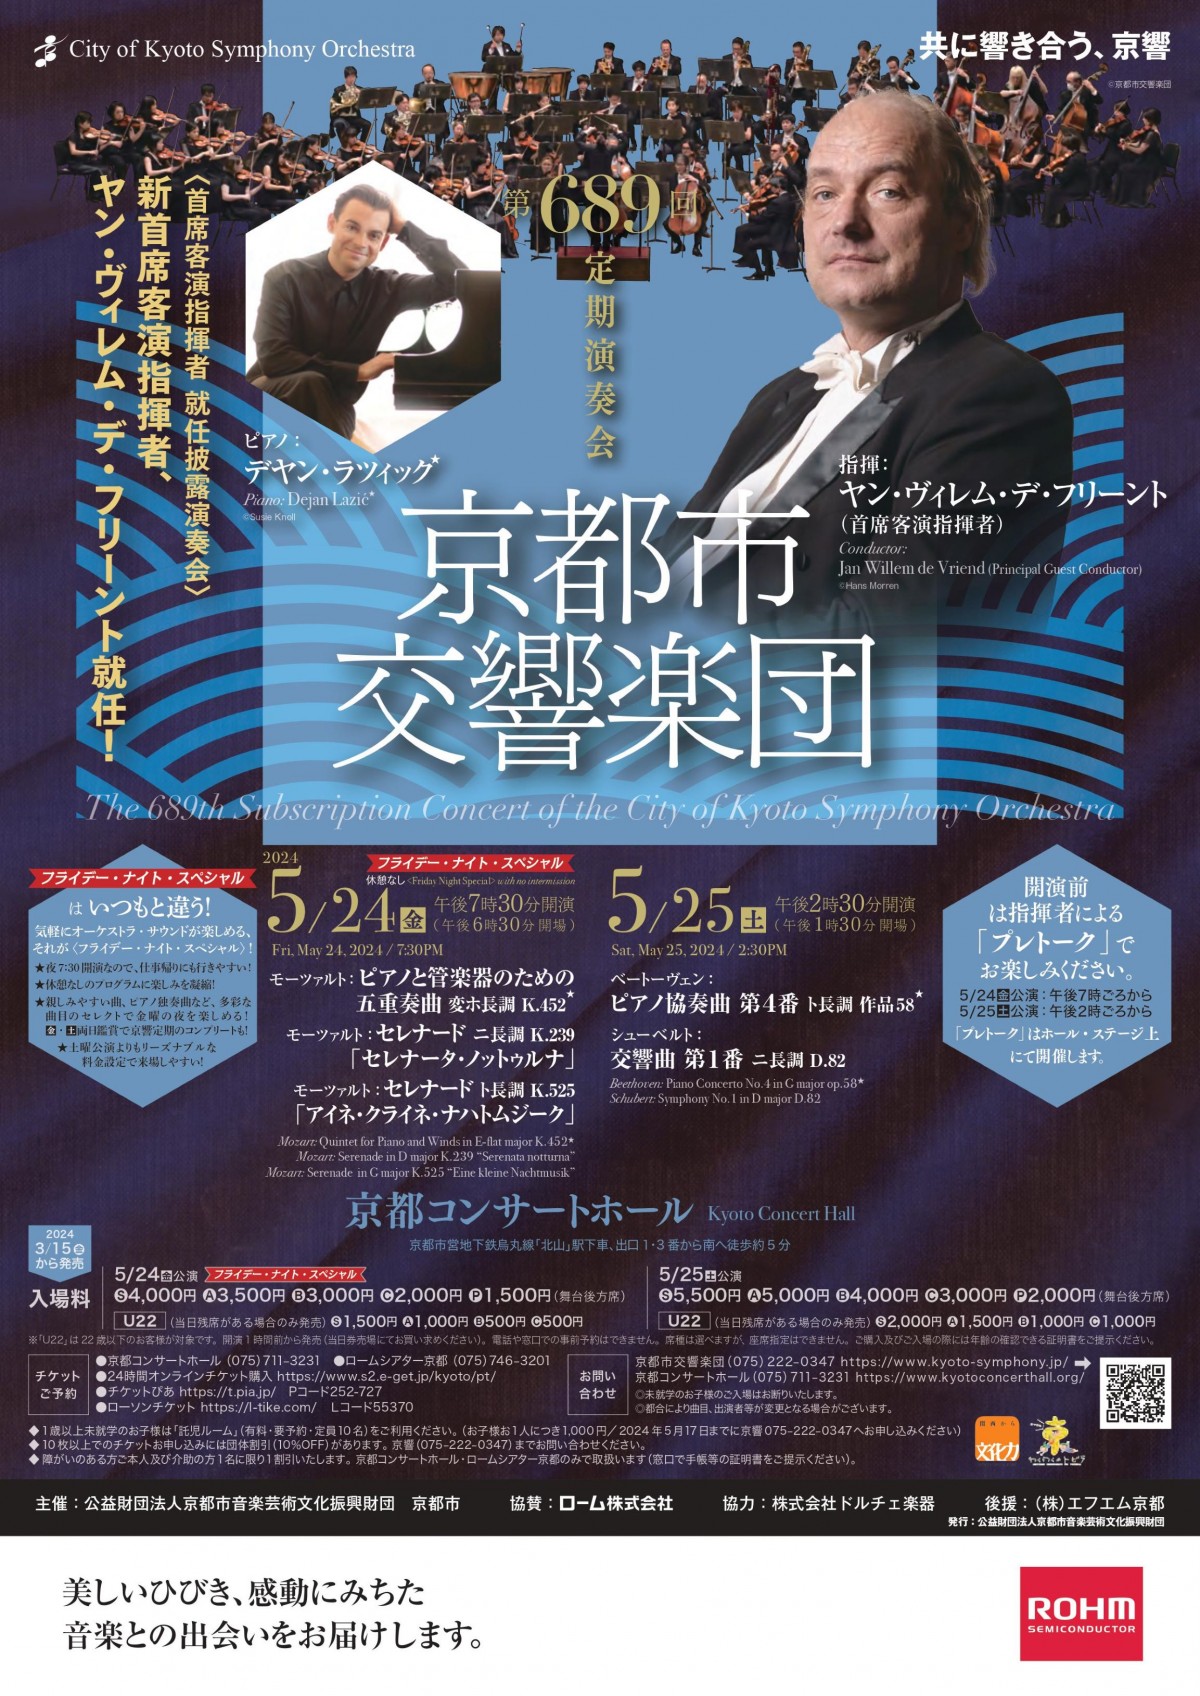 京都市交響楽団第689回定期演奏会のフライヤー画像